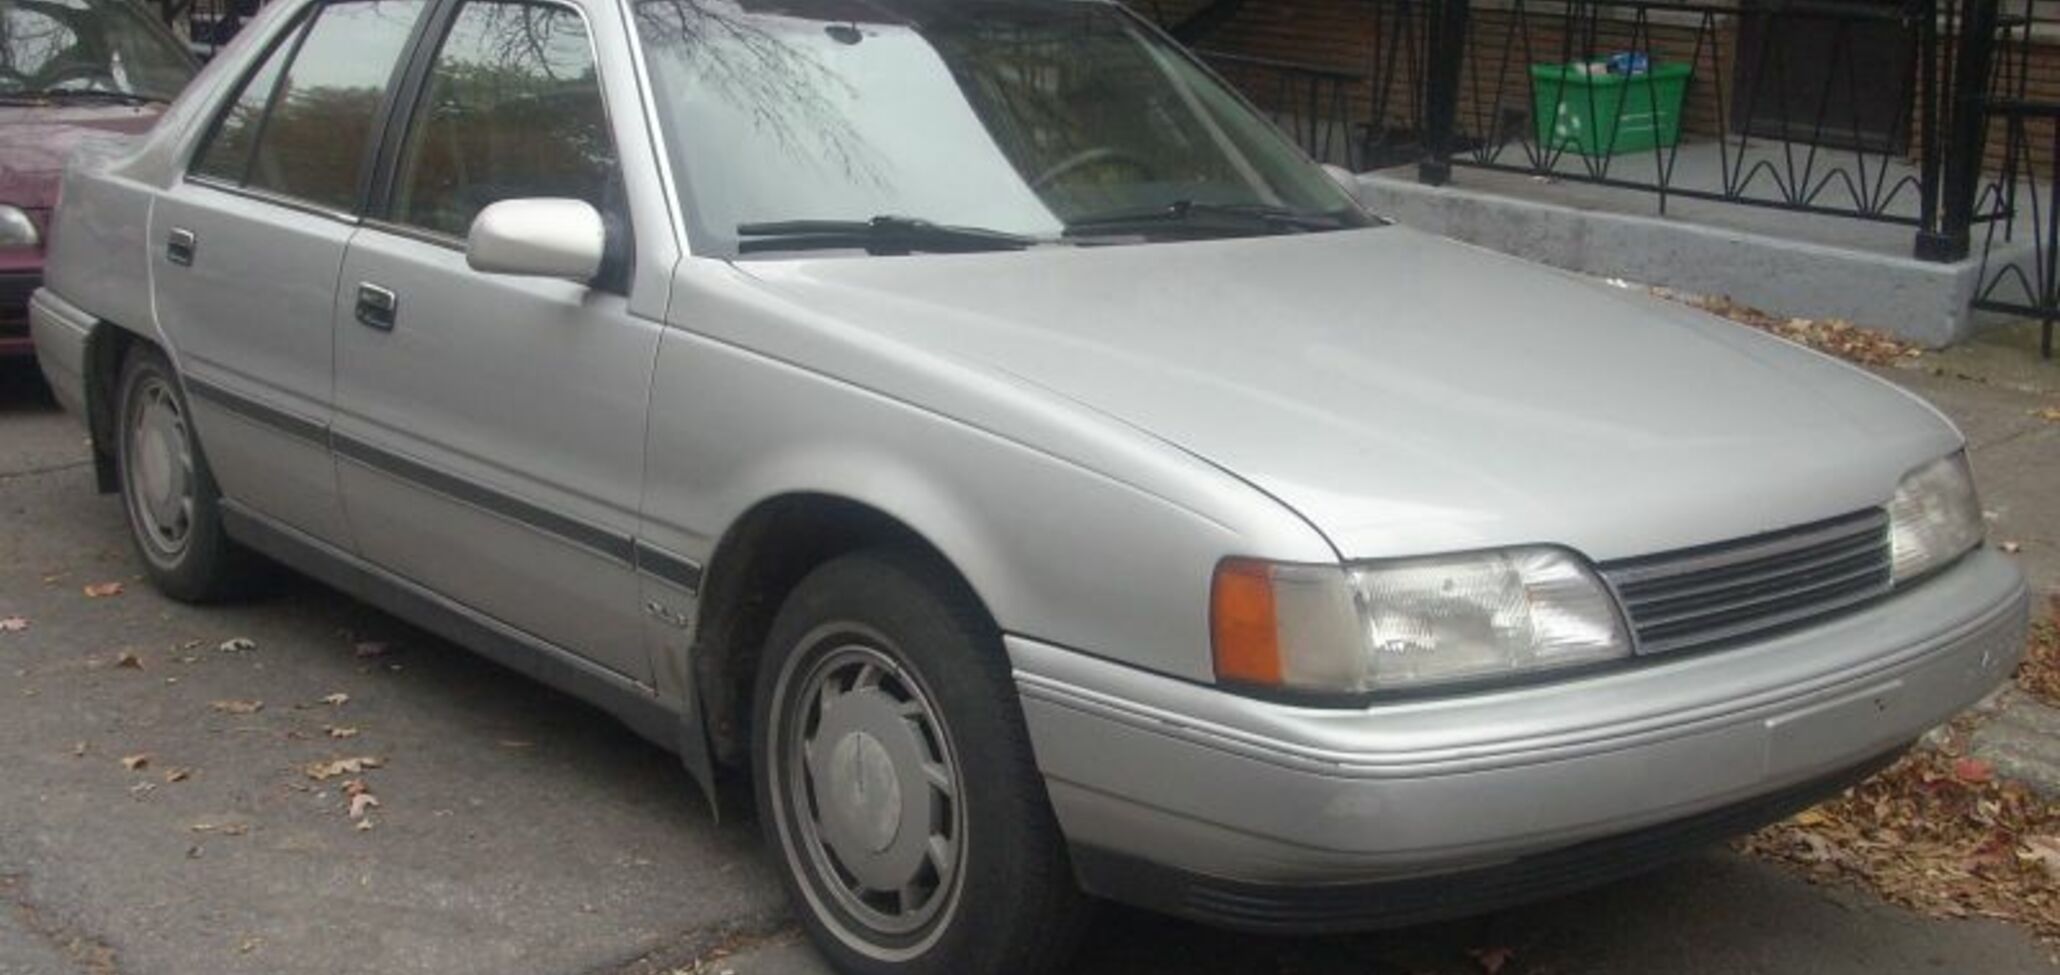 Hyundai Sonata II (Y2) 1.8 (97 Hp) Automatic 1988, 1989, 1990, 1991, 1992, 1993 